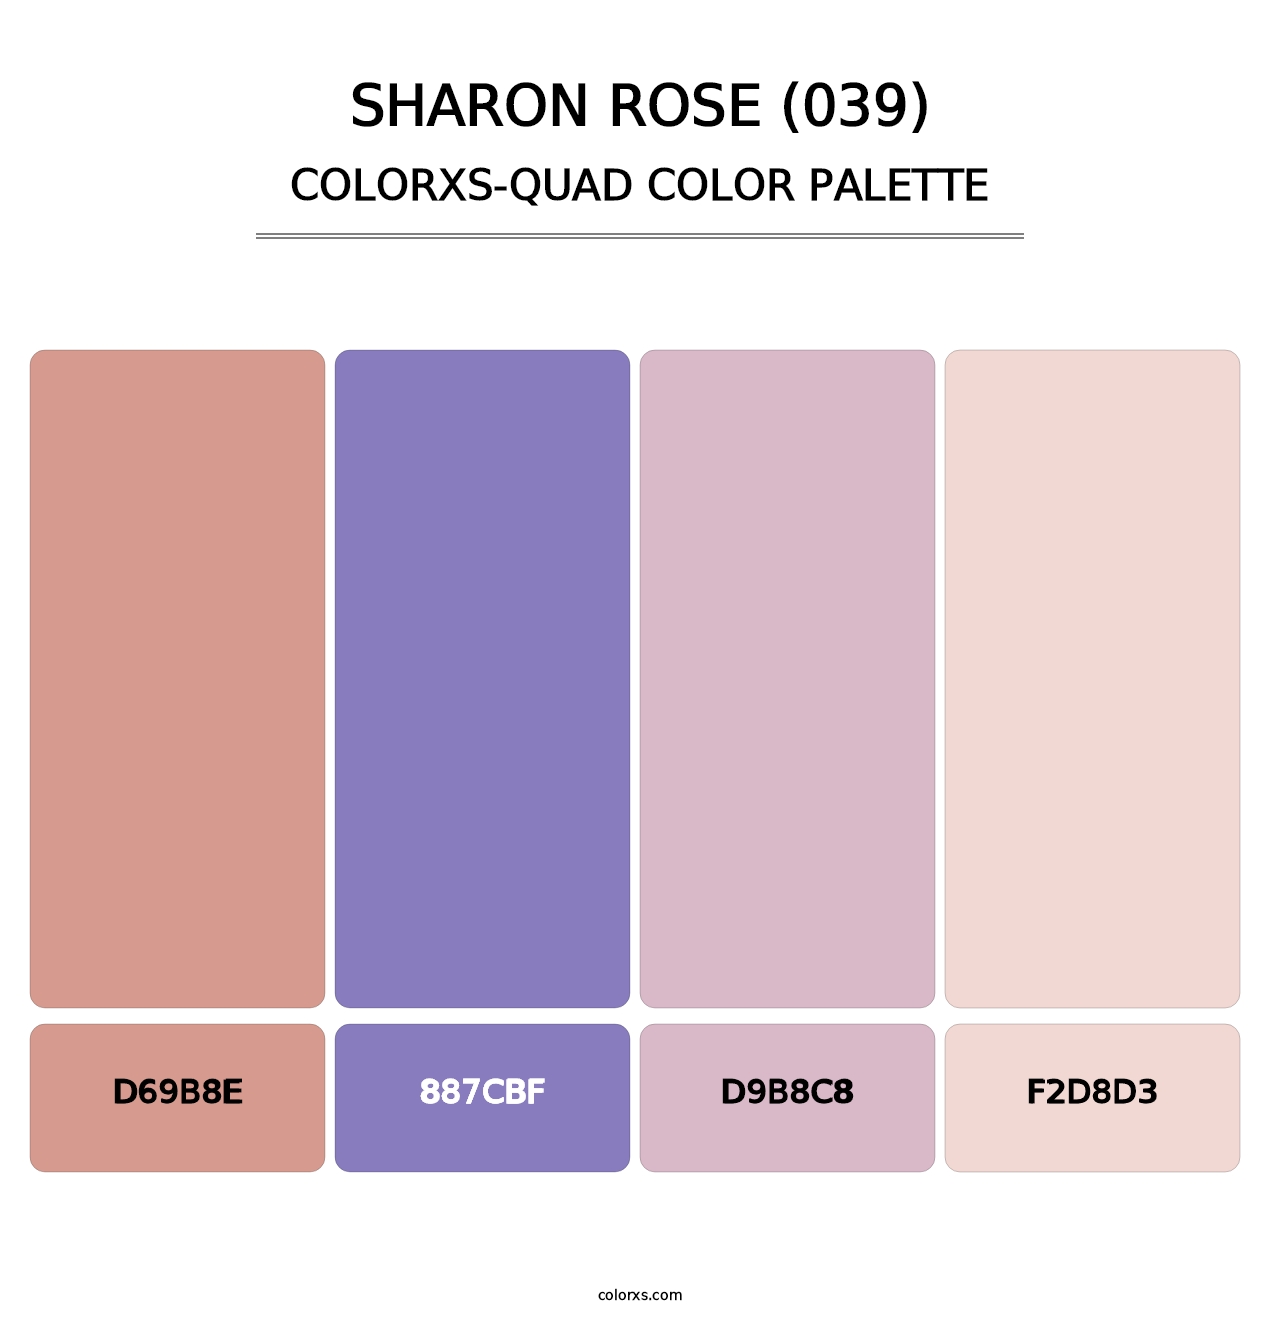 Sharon Rose (039) - Colorxs Quad Palette